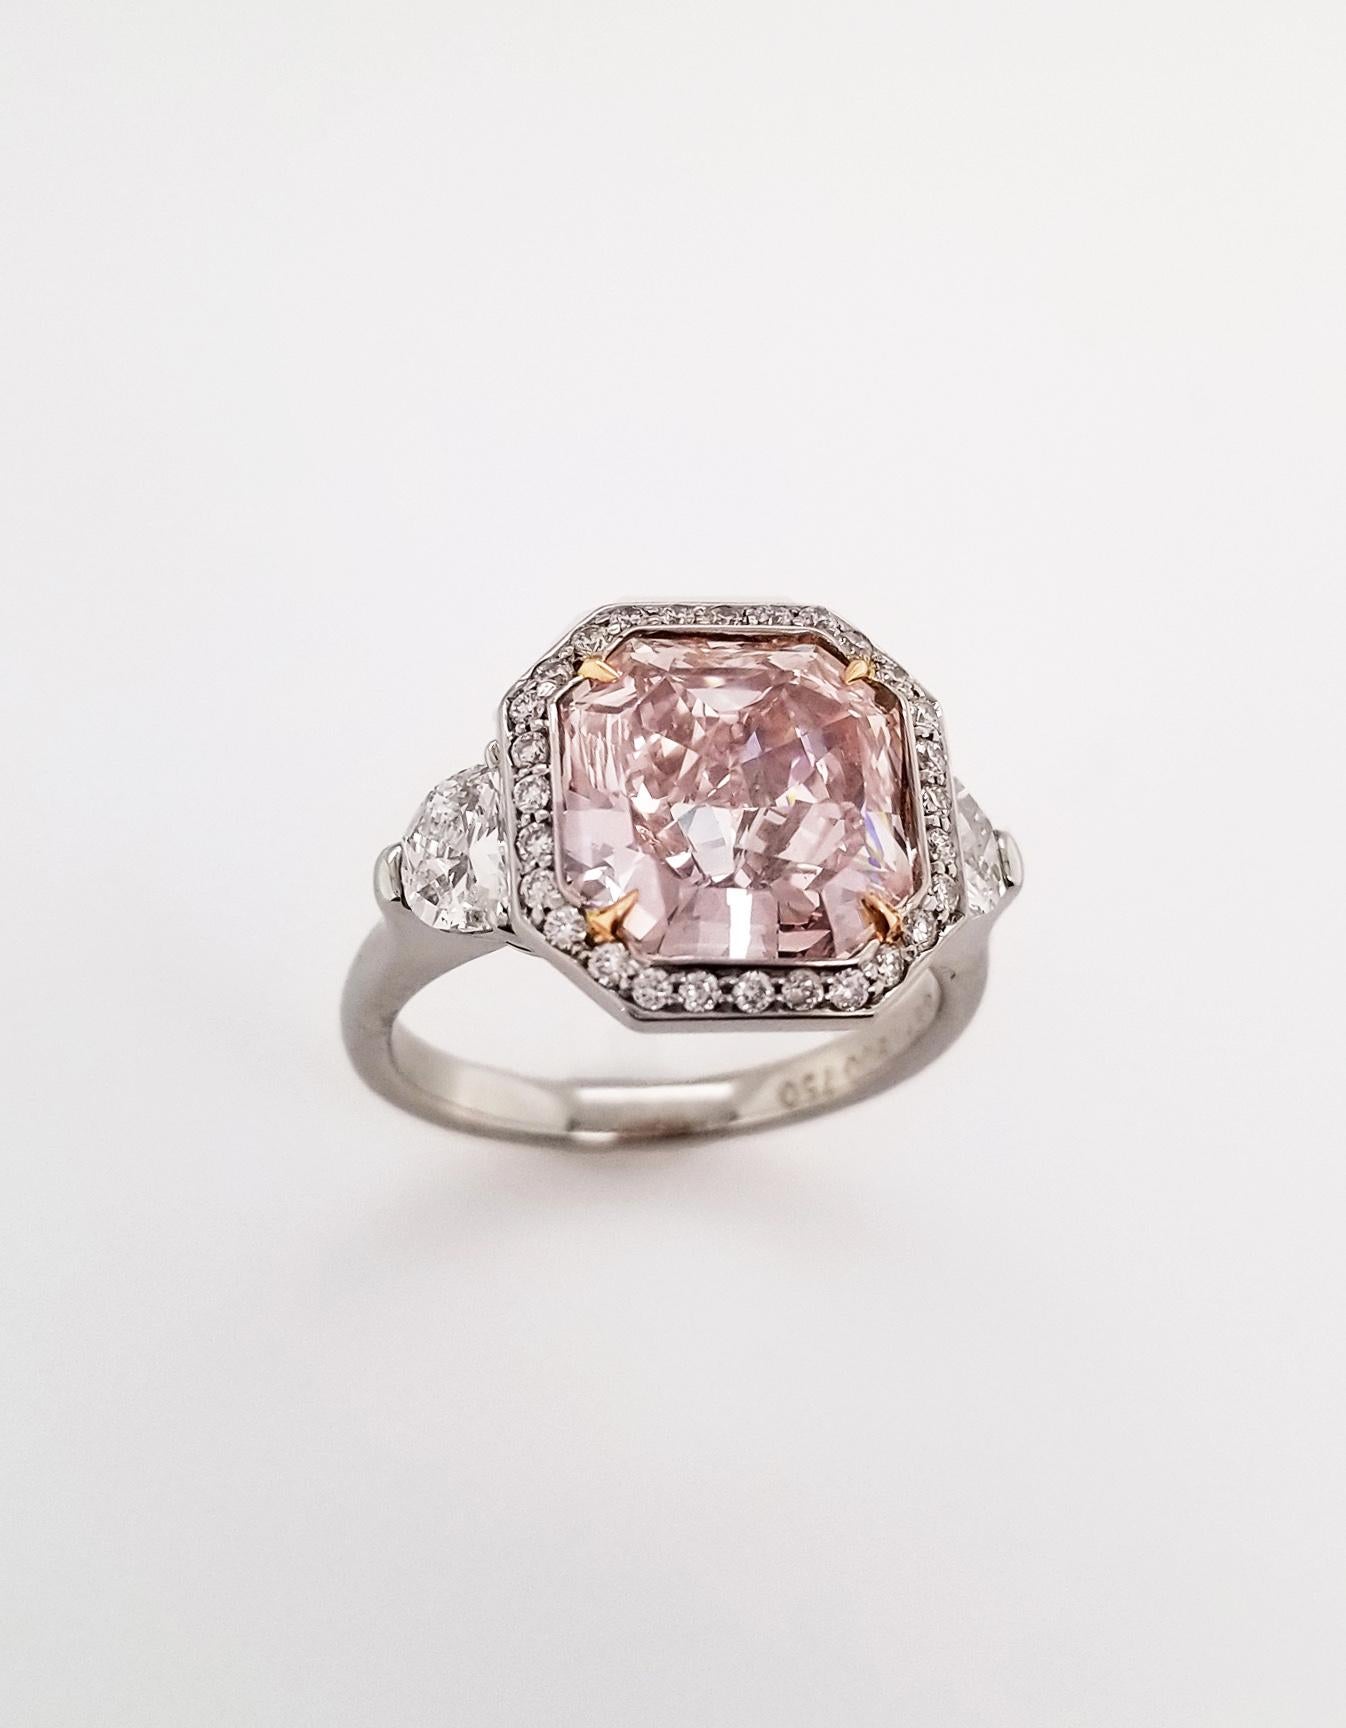 4 carat pink diamond ring